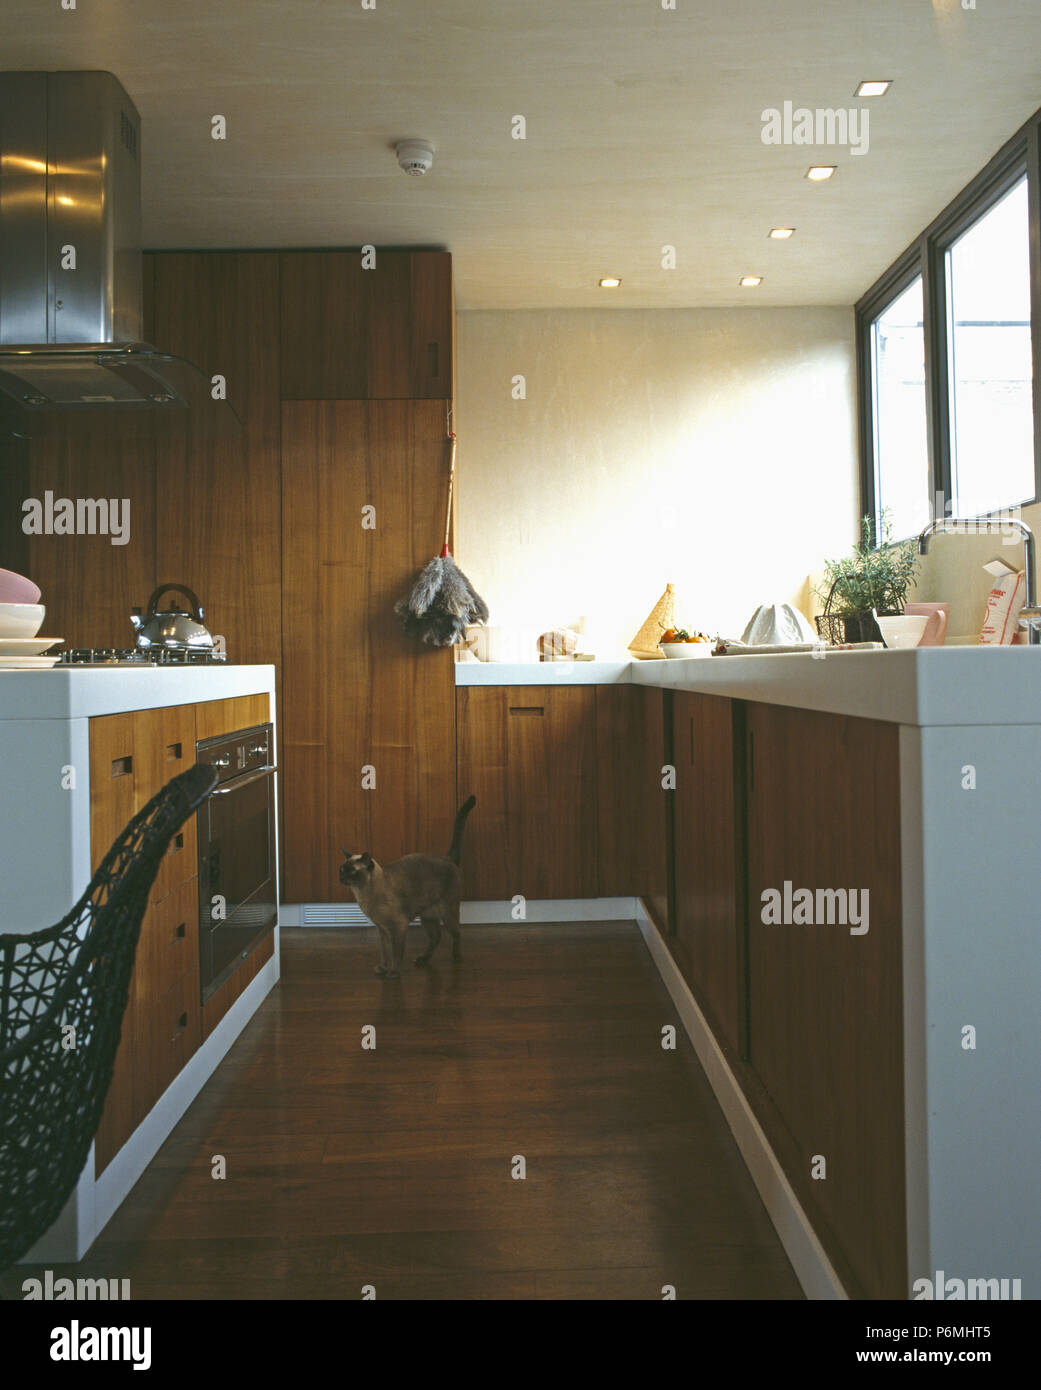 Holzboden in der modernen Küche mit dunkelbraunem Holz getäfelten Türen und Wand Stockfoto